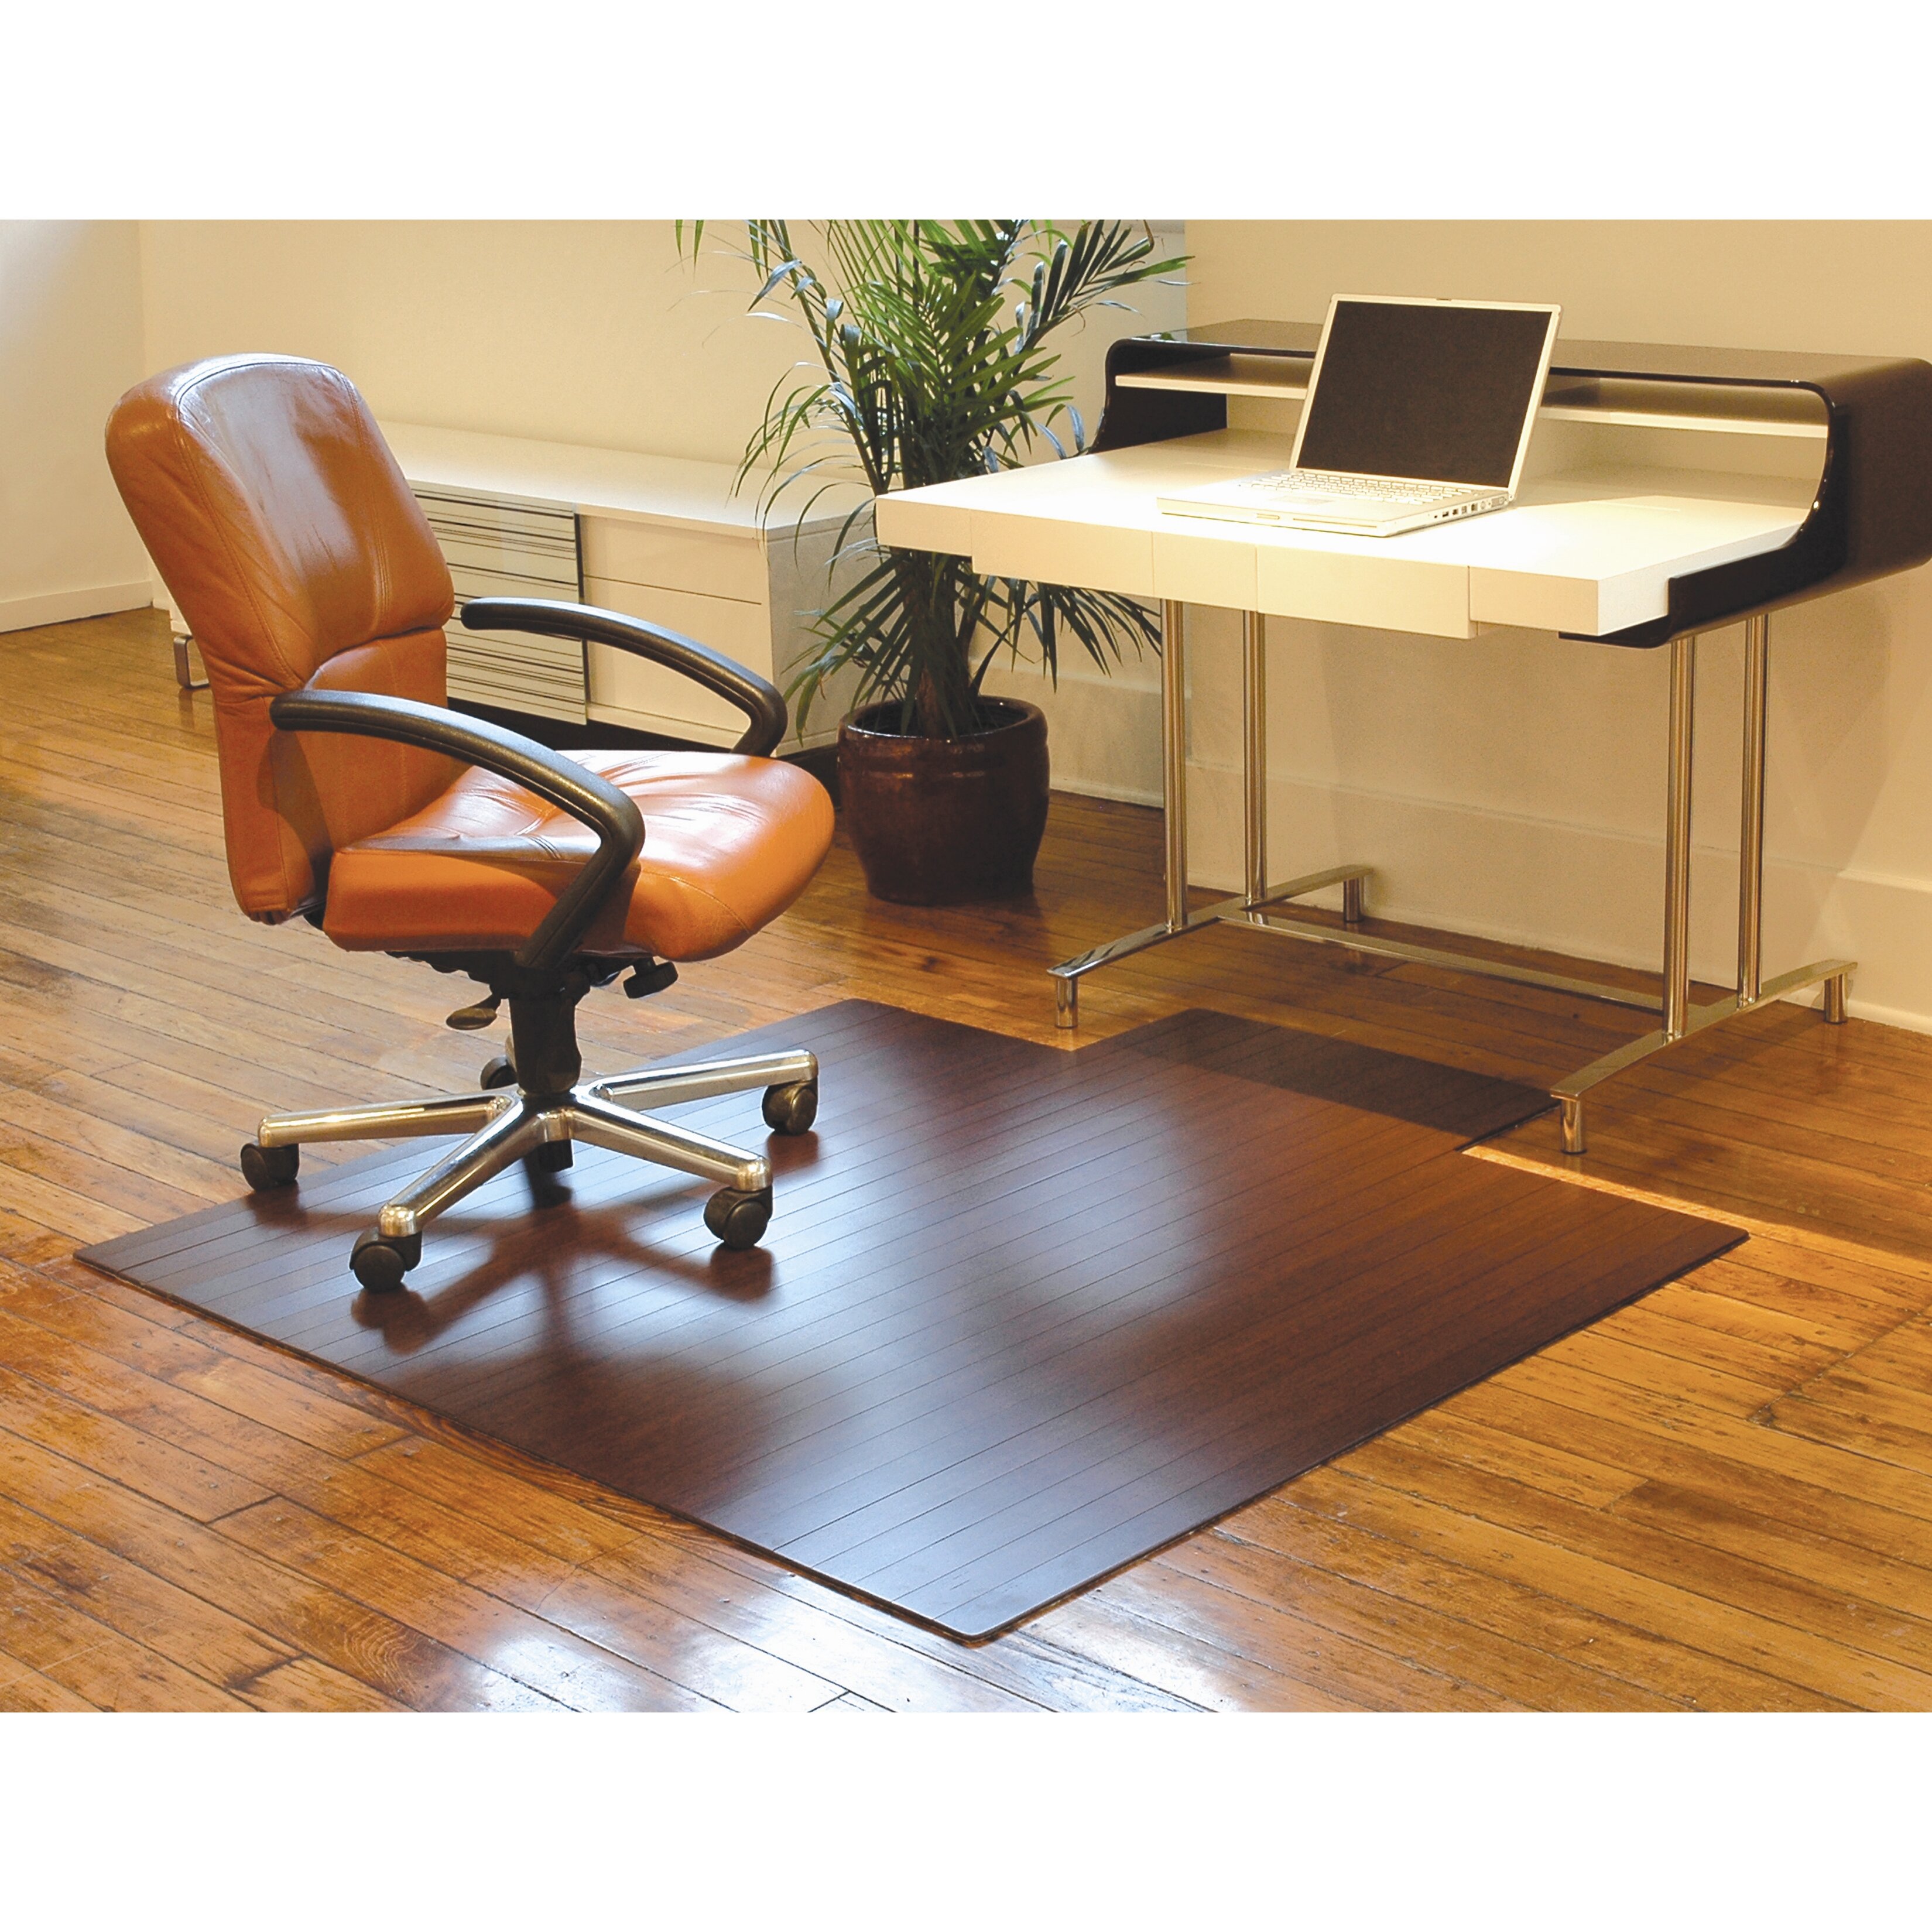 Low Pile and Hardwood Bamboo Office Chair Mat | Wayfair